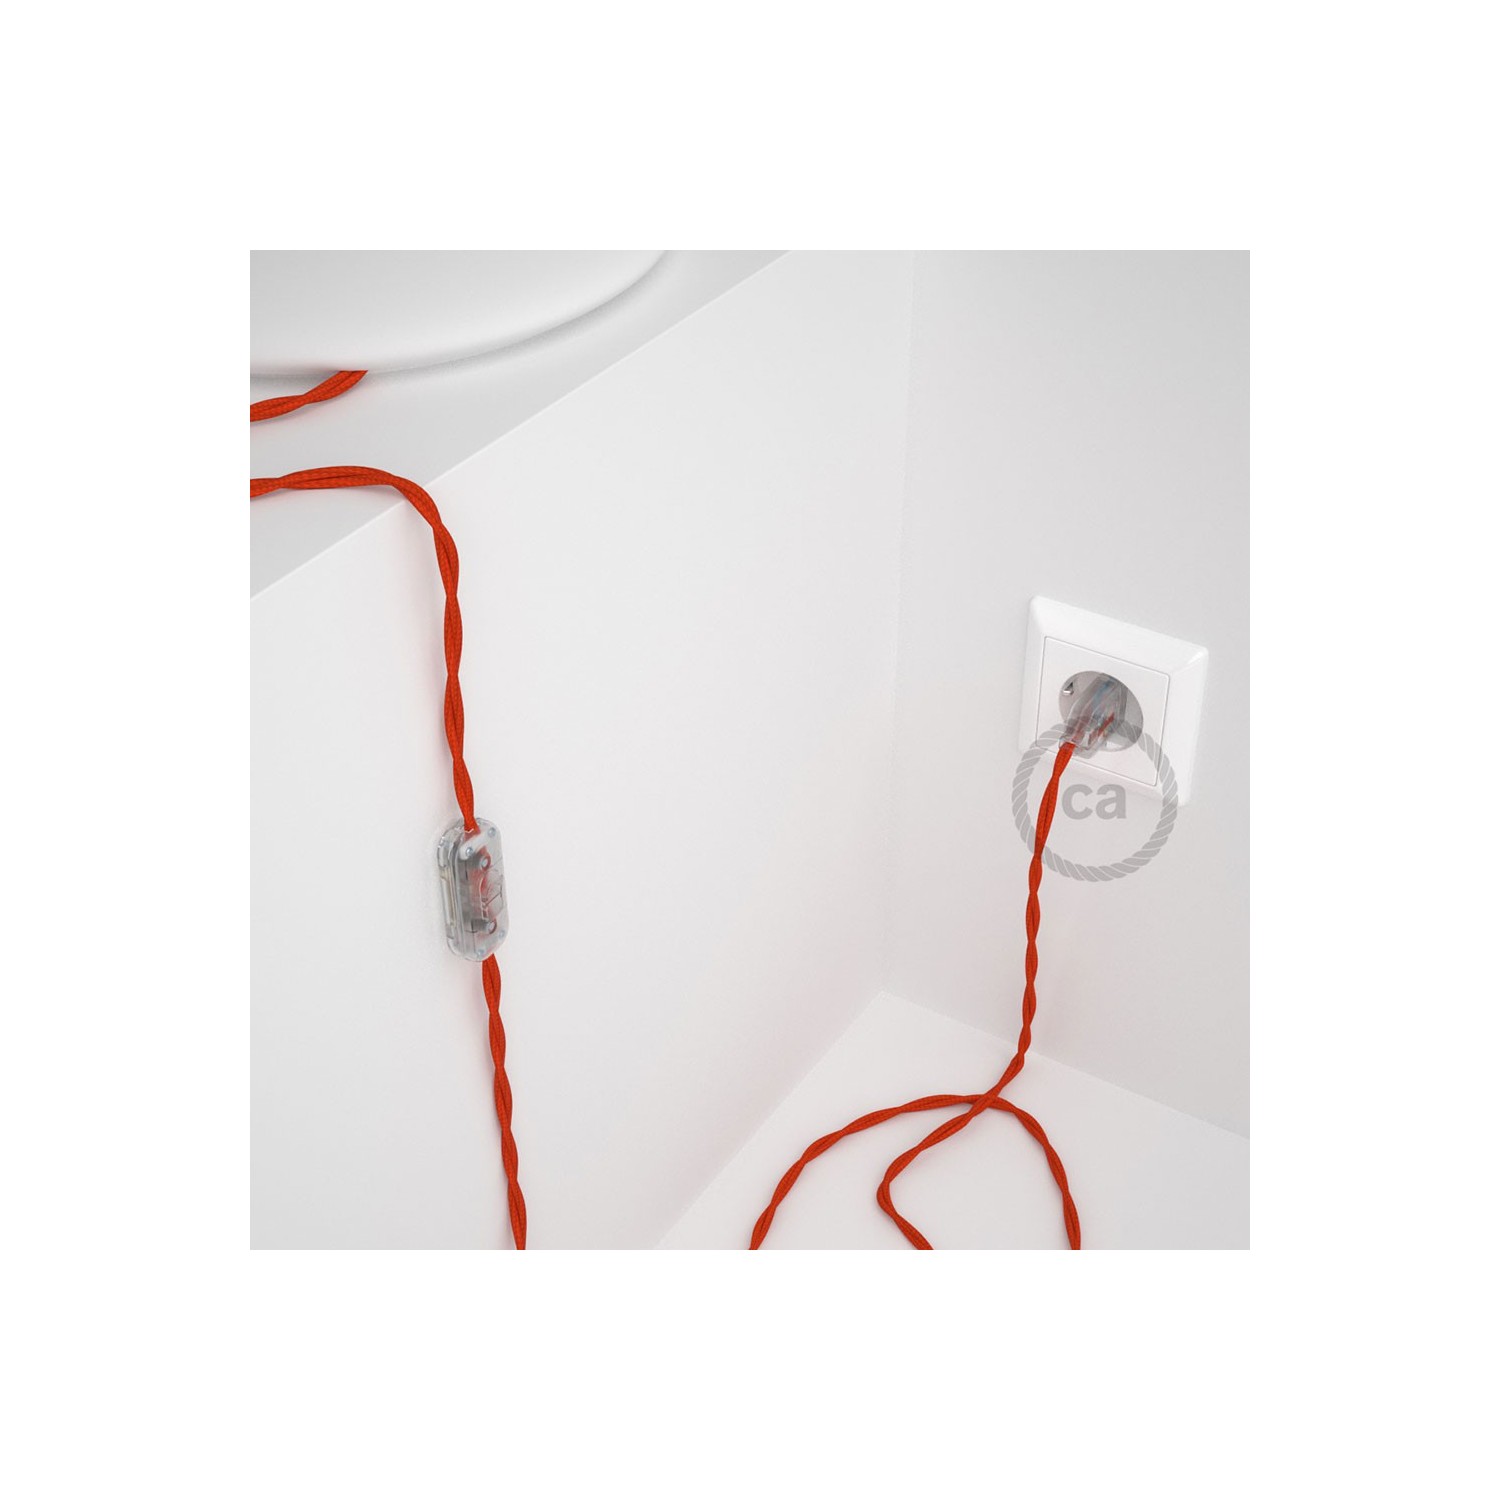 Cablaggio per lampada, cavo TM15 Effetto Seta Arancione 1,80 m. Scegli il colore dell'interruttore e della spina.